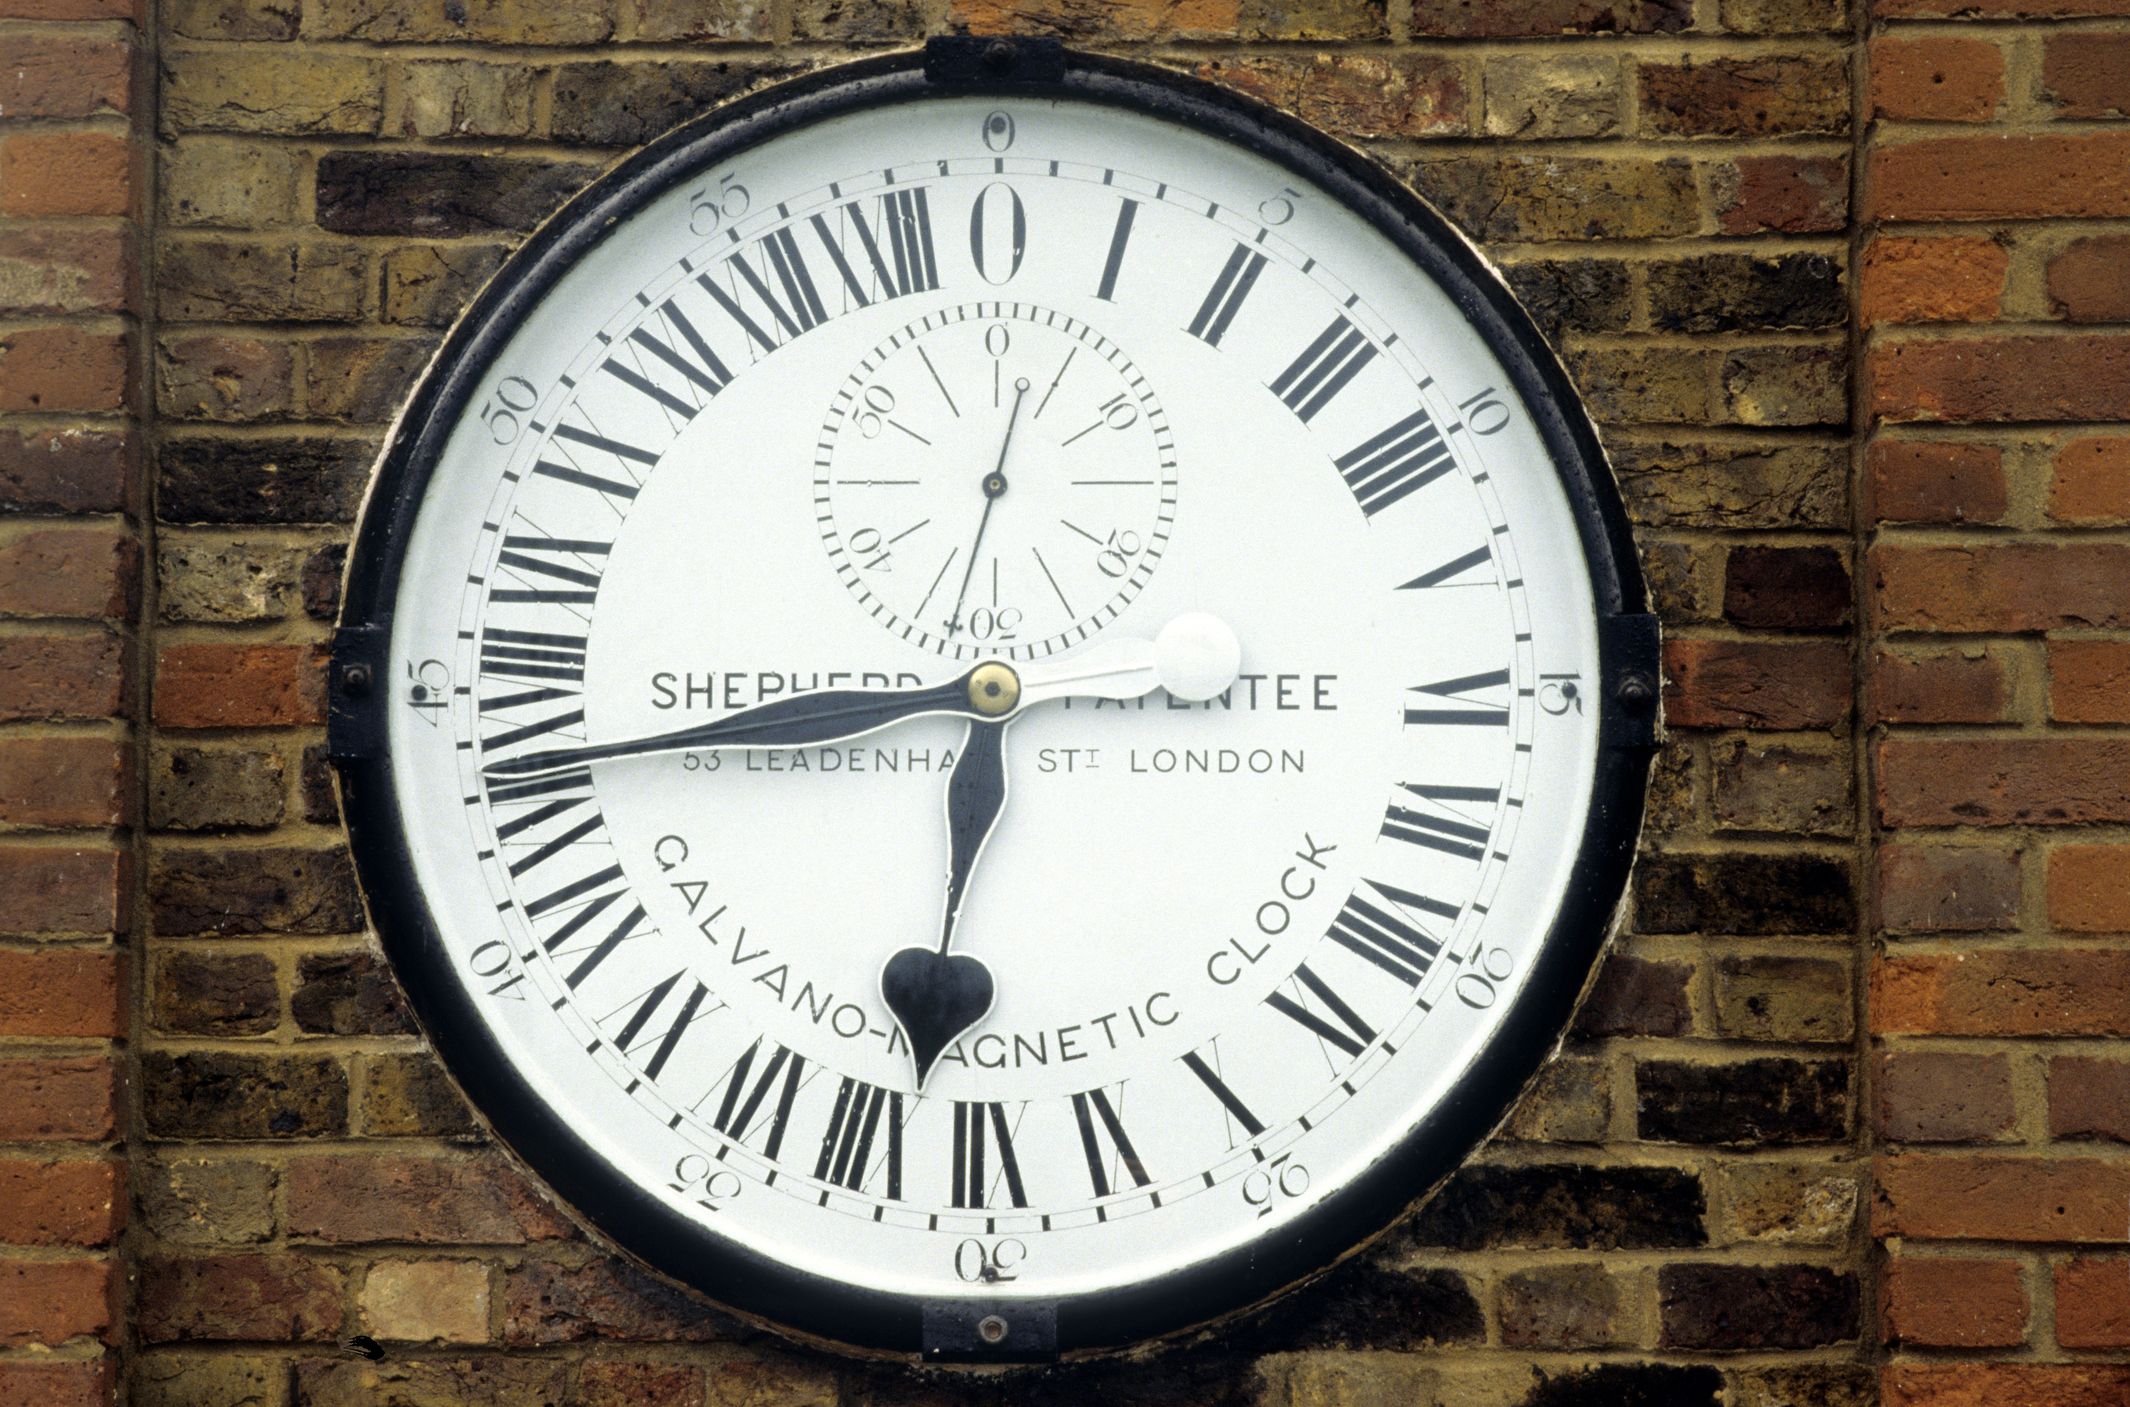 Бережок часов. Часы Гринвич в Лондоне. Часы "Гринвич". Часы обсерватории Гринвича. Часы королевской обсерватории в Гринвиче.